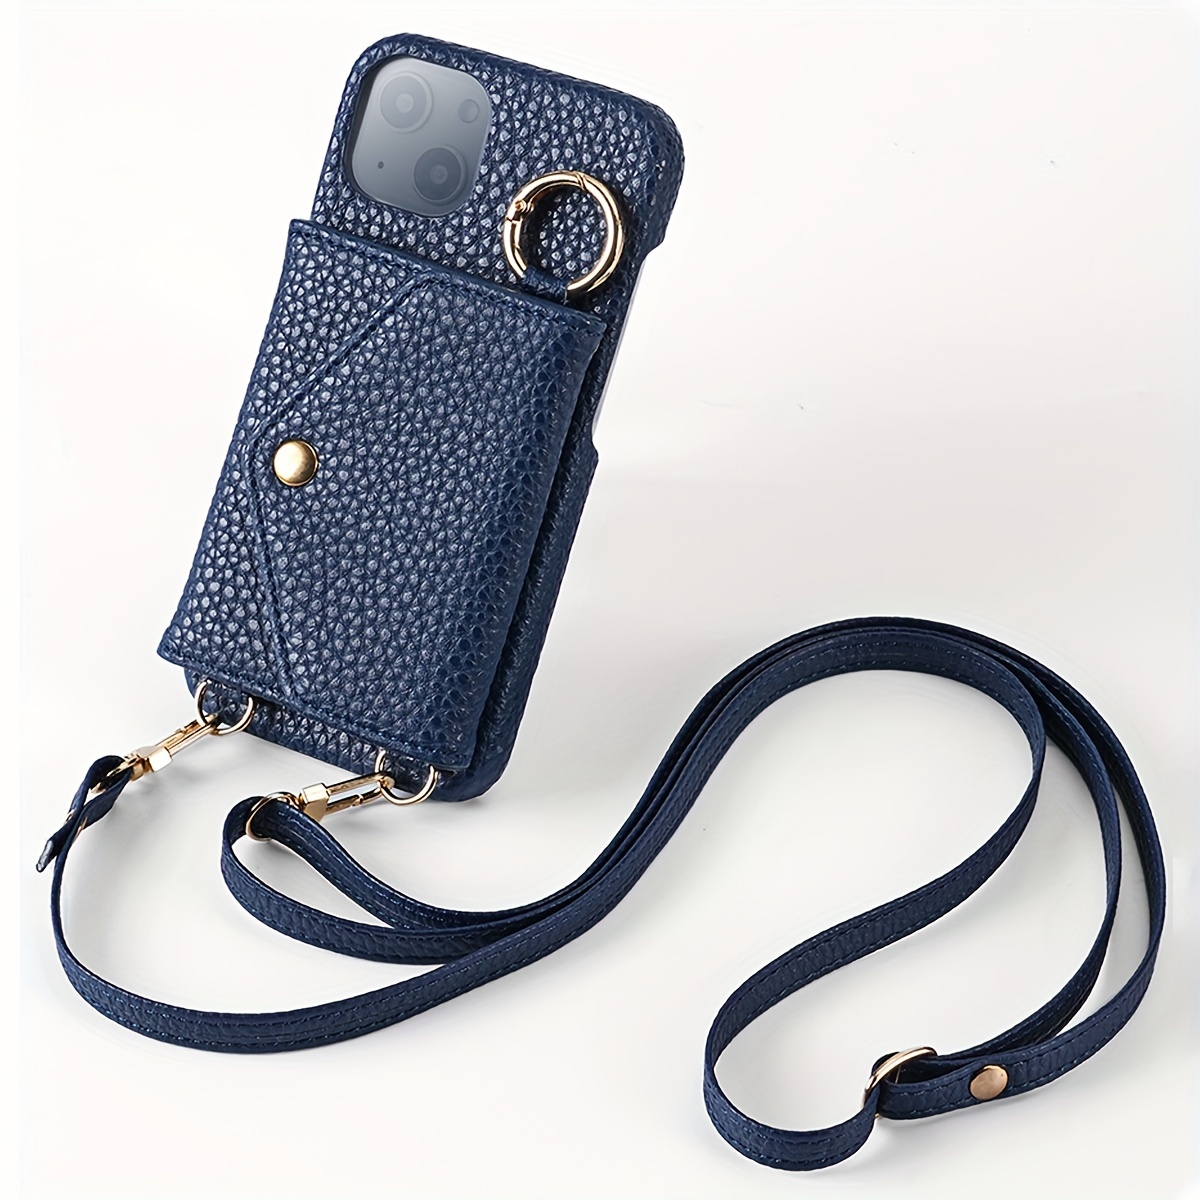 Designer iPhone 15 Pro, iPhone 15 Pro Max Cases  Chanel iphone case, Iphone  leather case, Luxury iphone cases